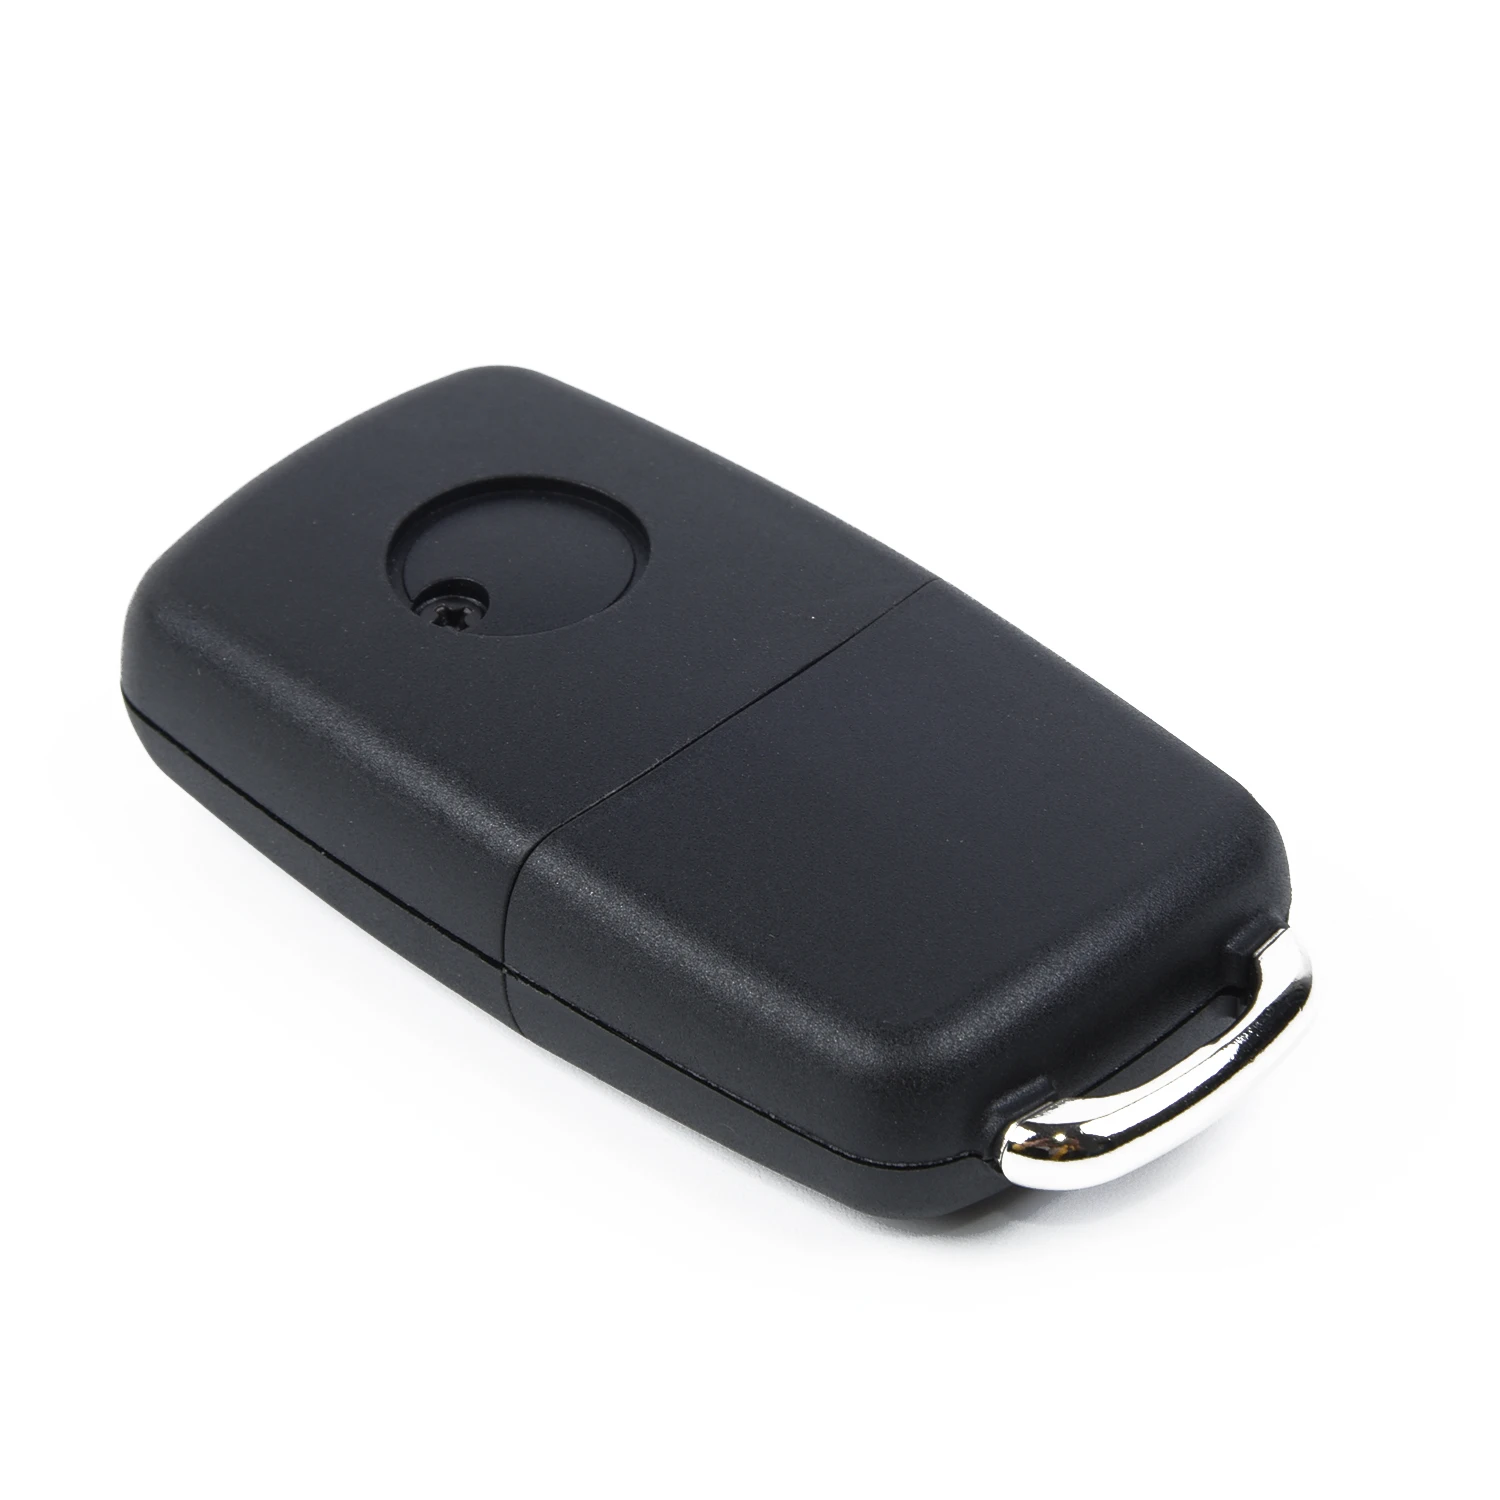 Черный пульт дистанционного управления авто брелок чехол балванки для ключей с 3 кнопками Запчасти аксессуар UK